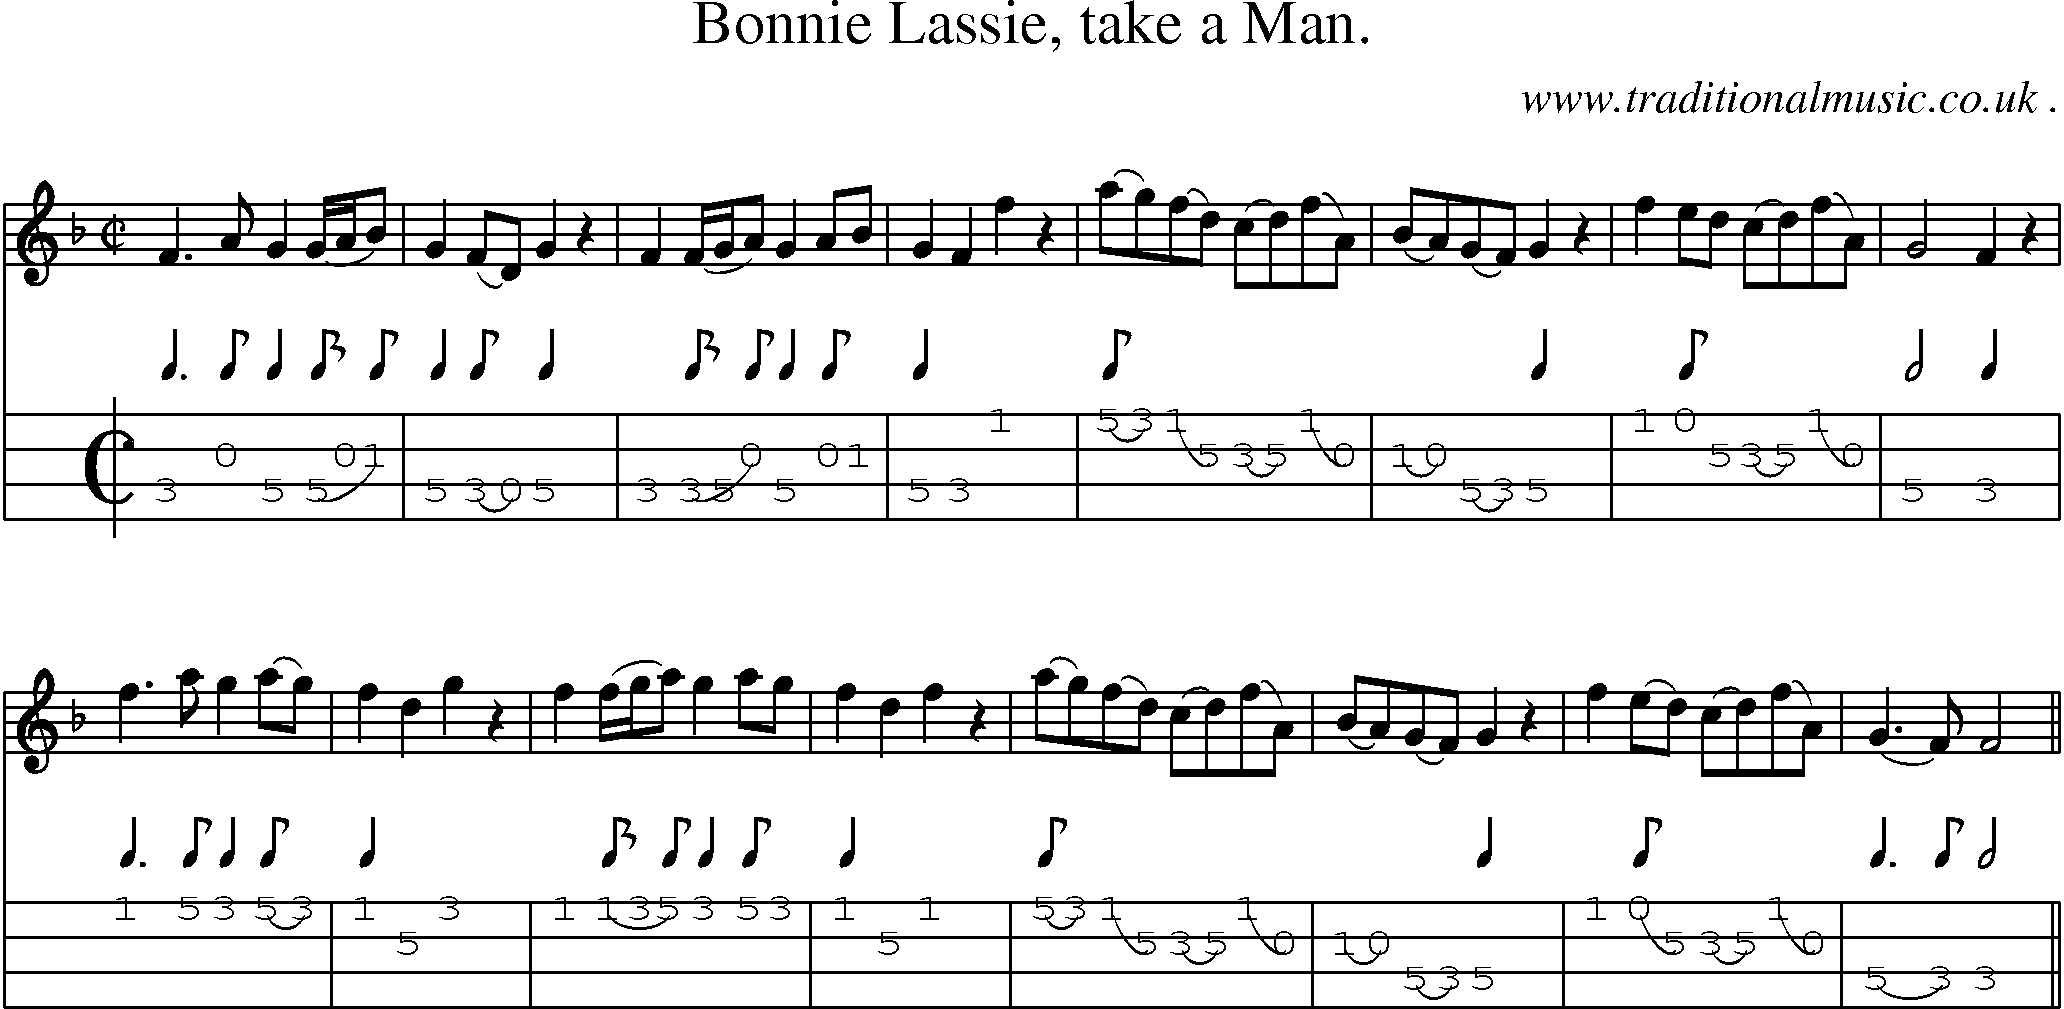 Sheet-Music and Mandolin Tabs for Bonnie Lassie Take A Man